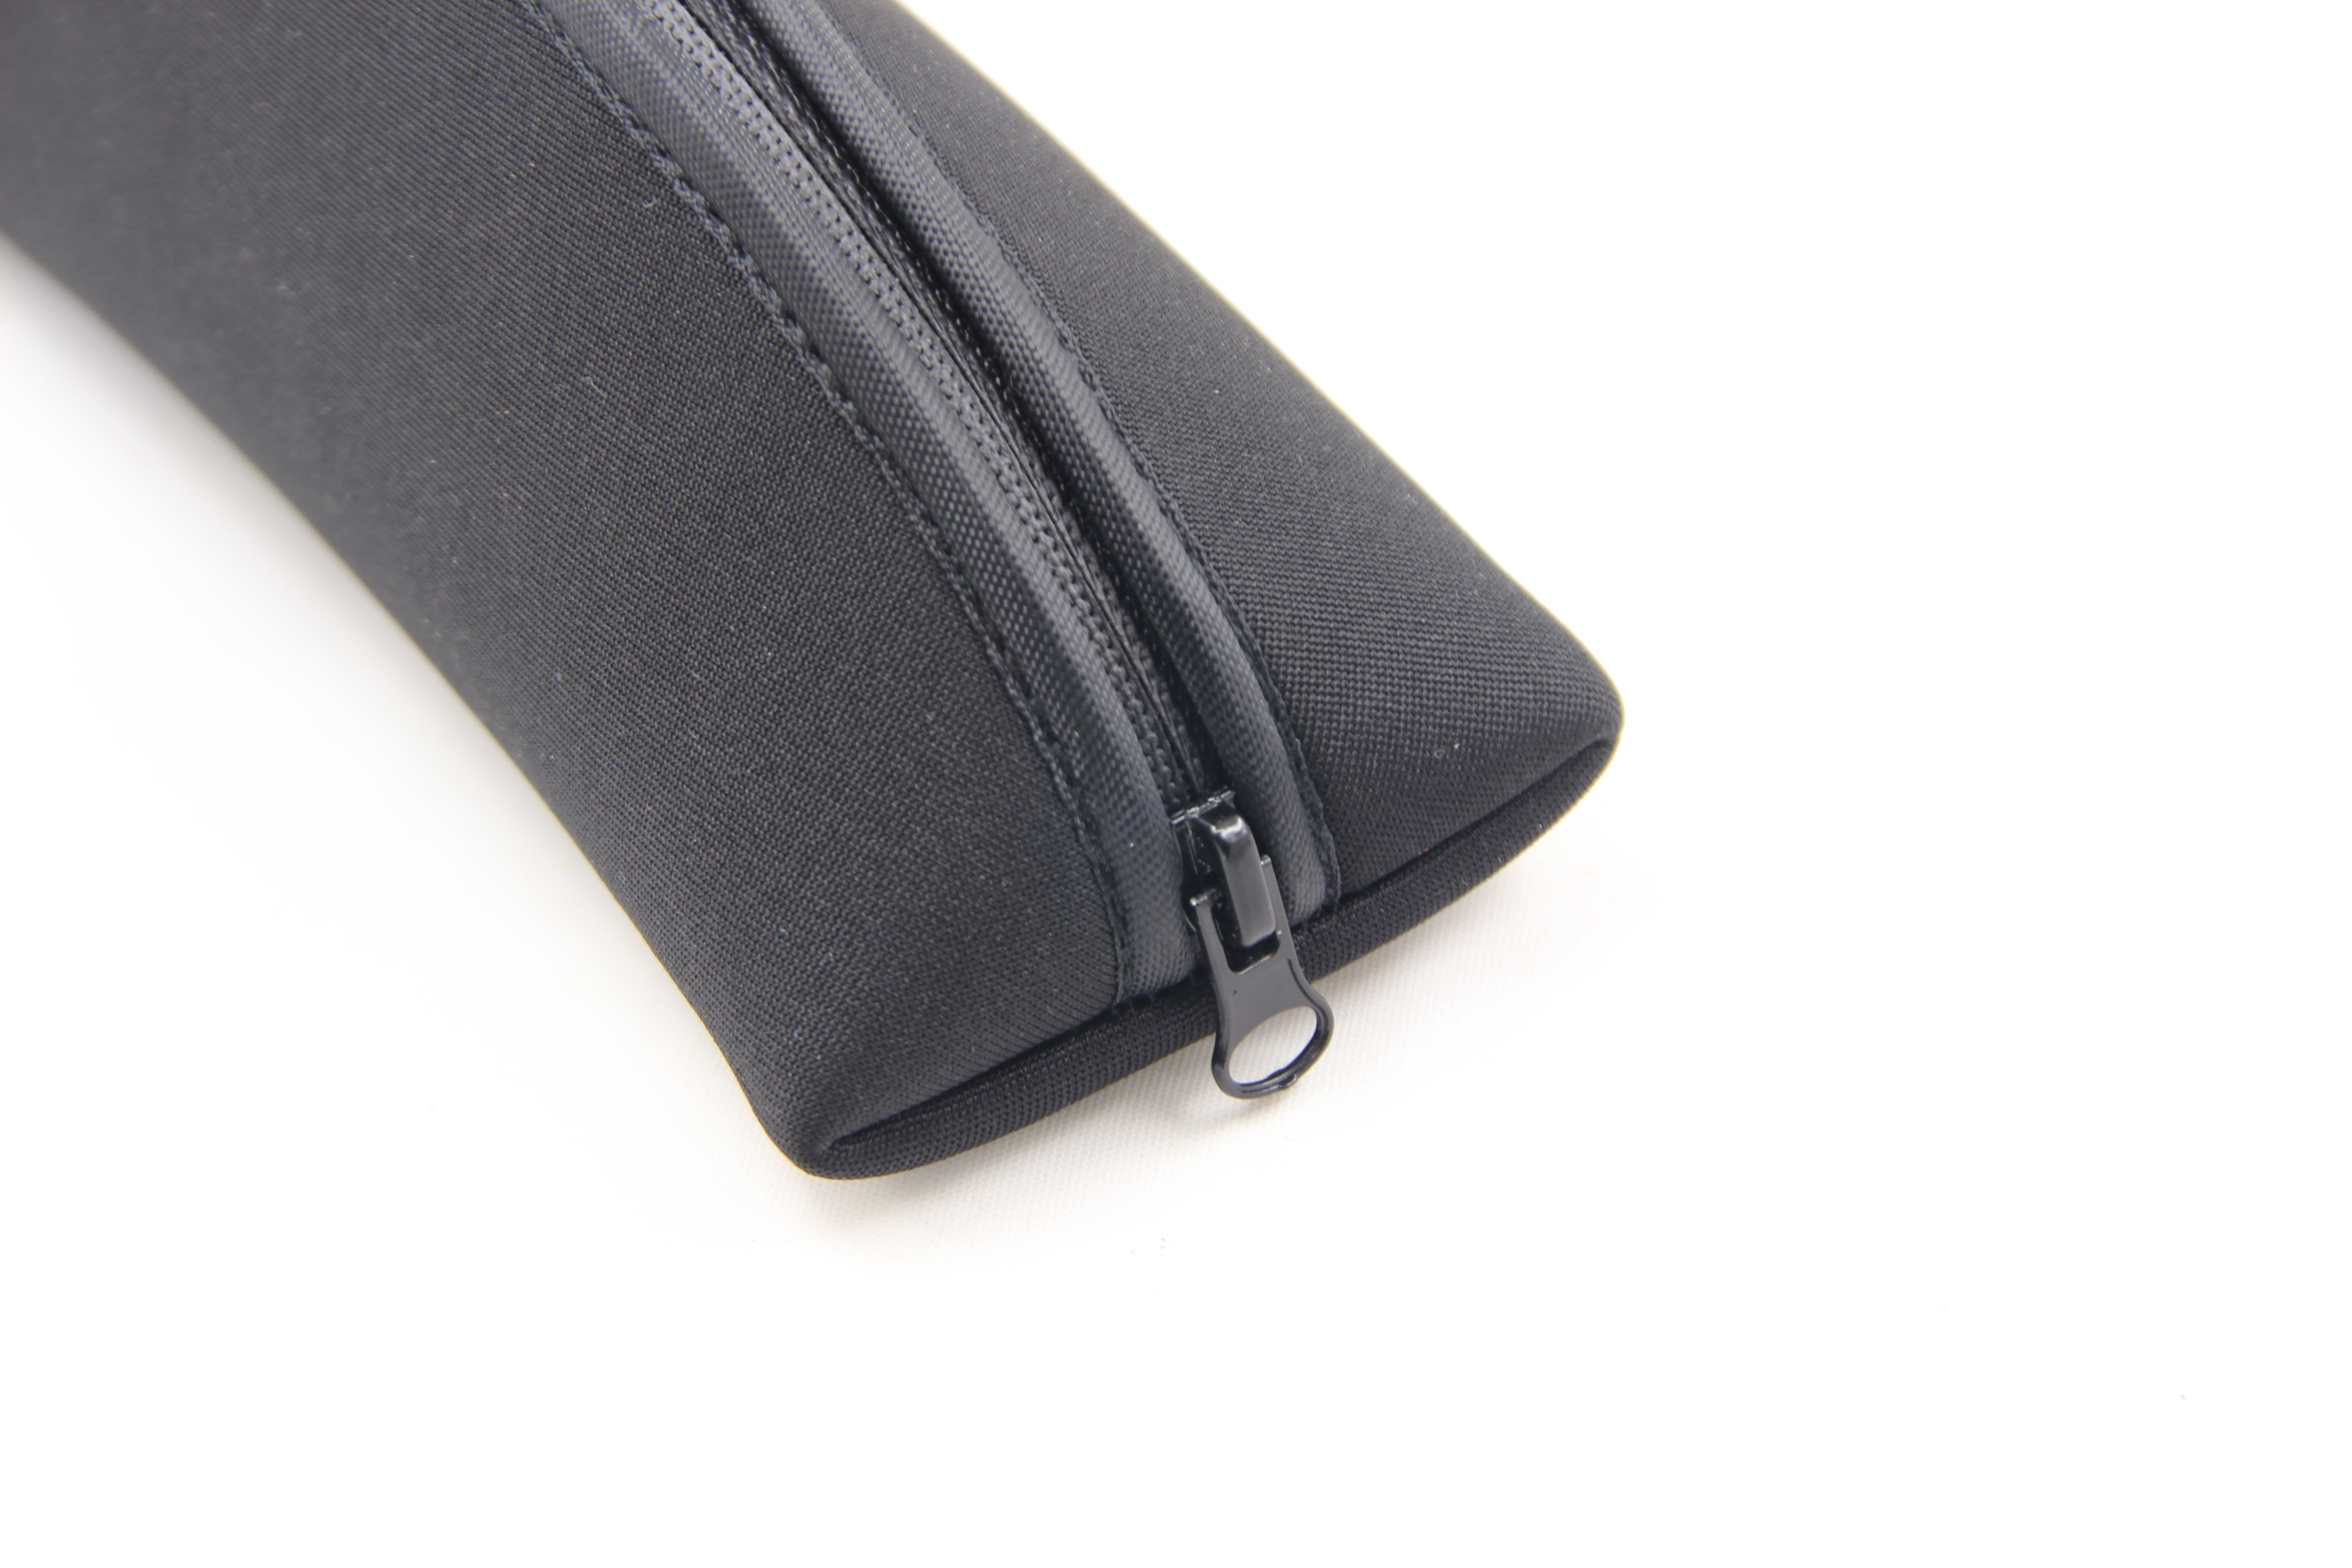 Floating popular black soft pouch sunglasses case neoprene bag